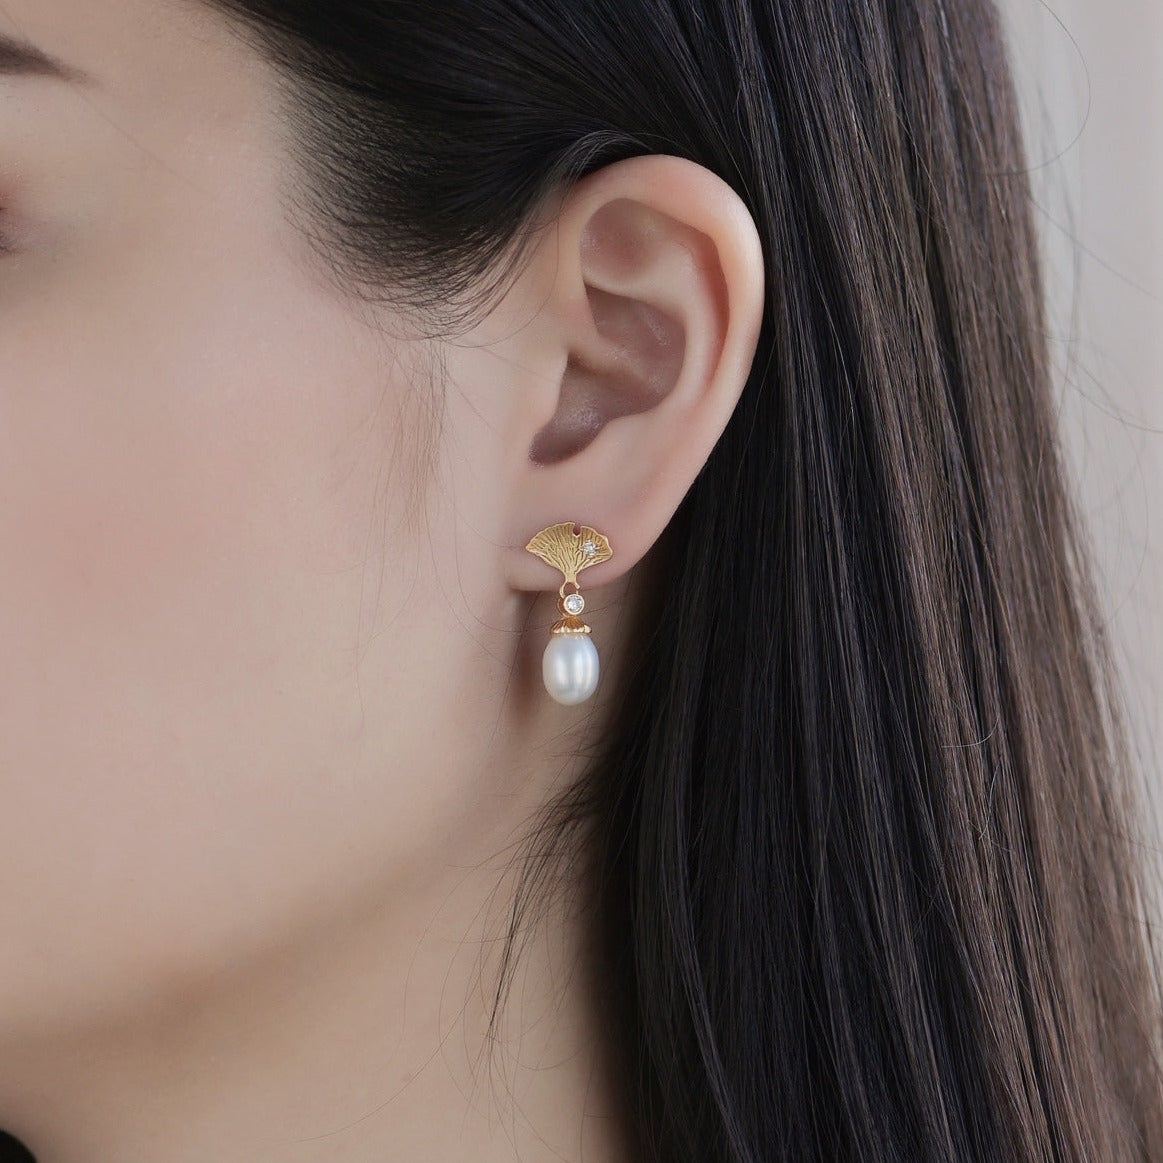 Theodora-Golden Ginkgo Pearl Stud Earrings